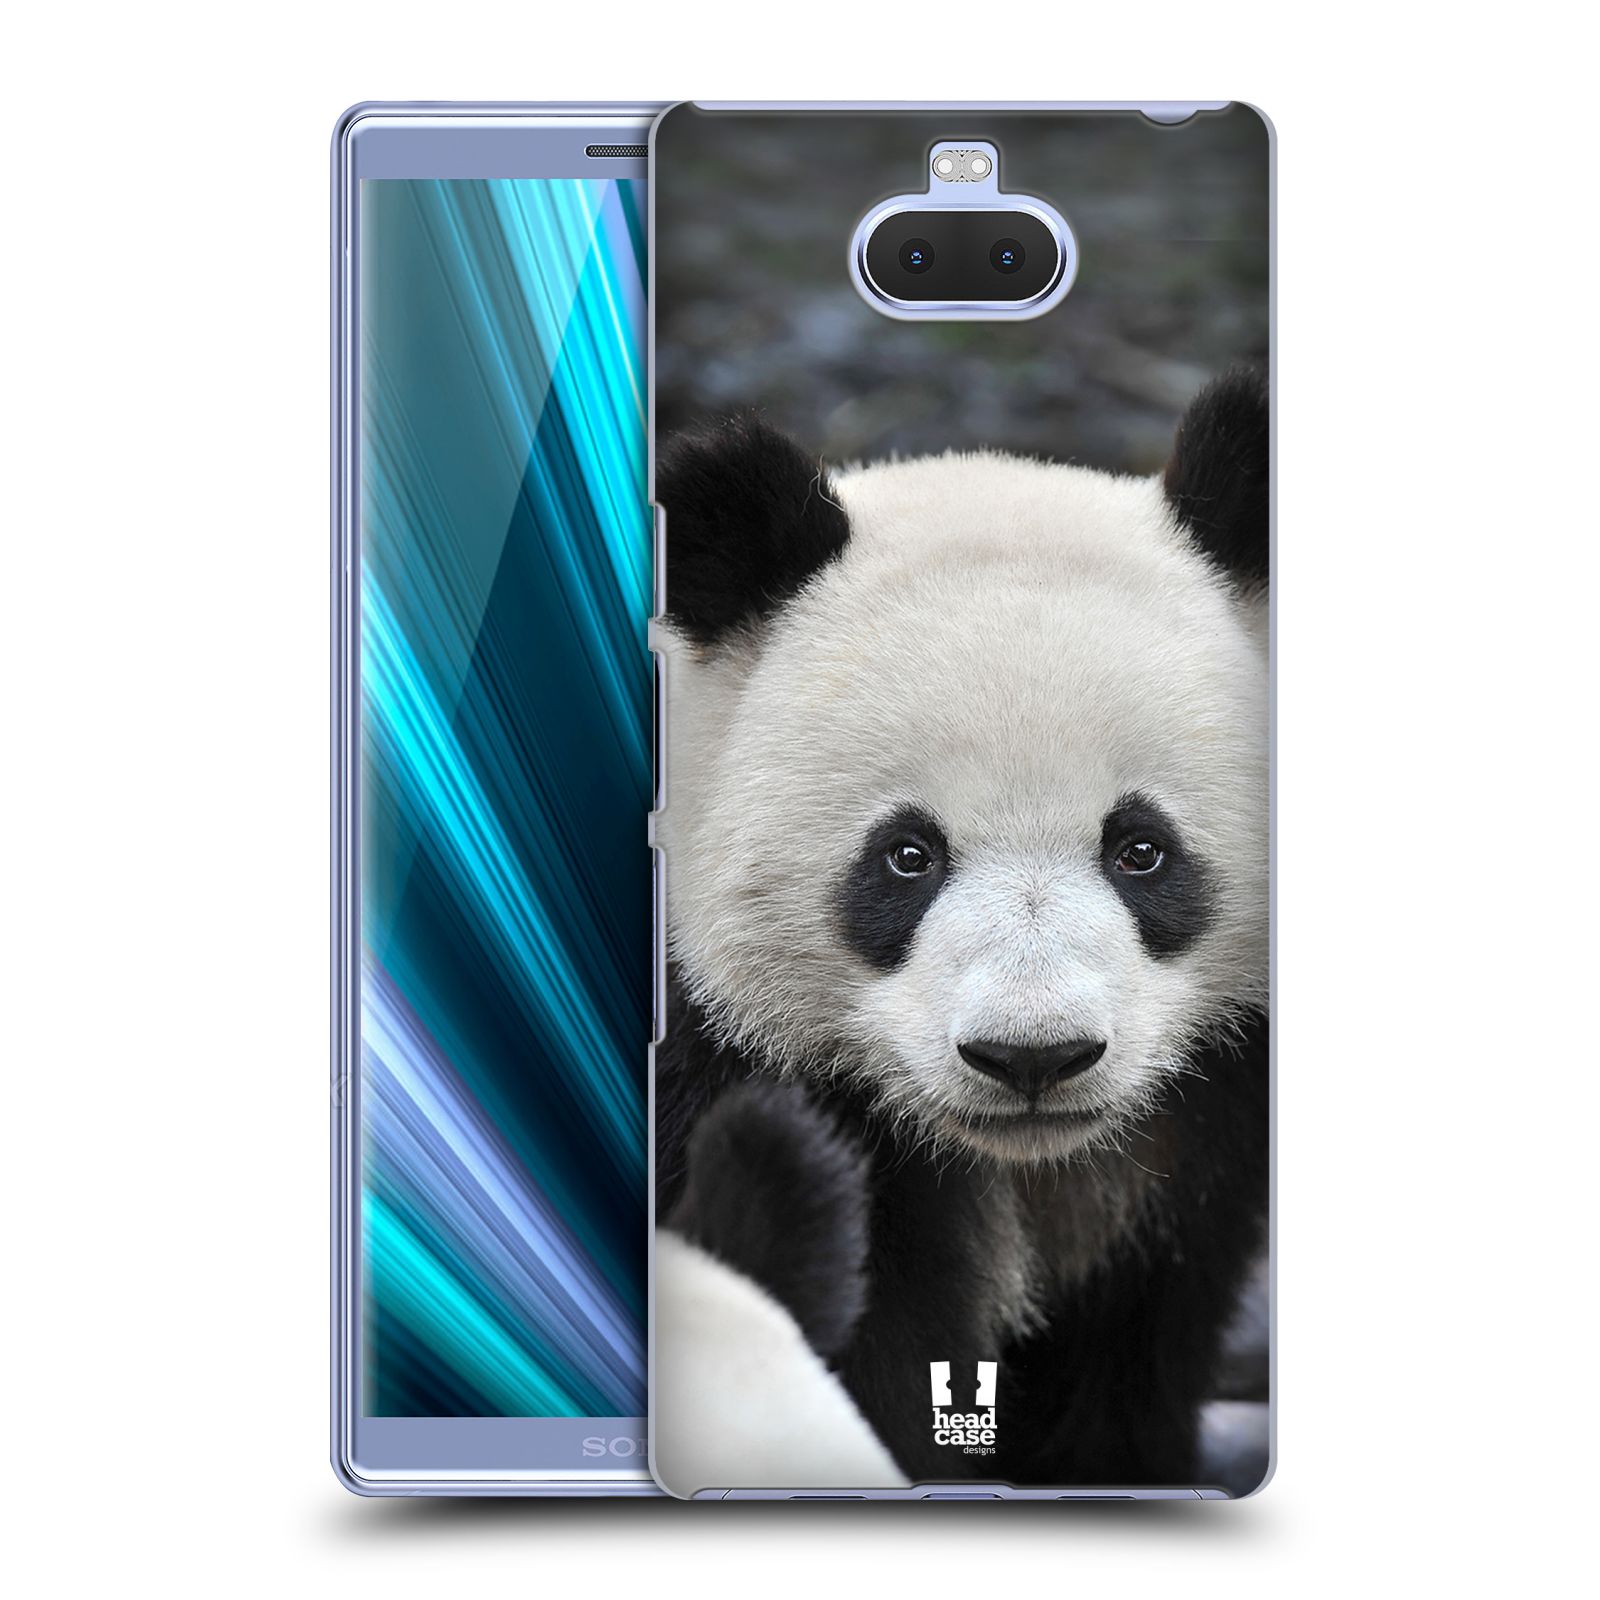 Zadní obal pro mobil Sony Xperia 10 ULTRA - HEAD CASE - Svět zvířat medvěd panda